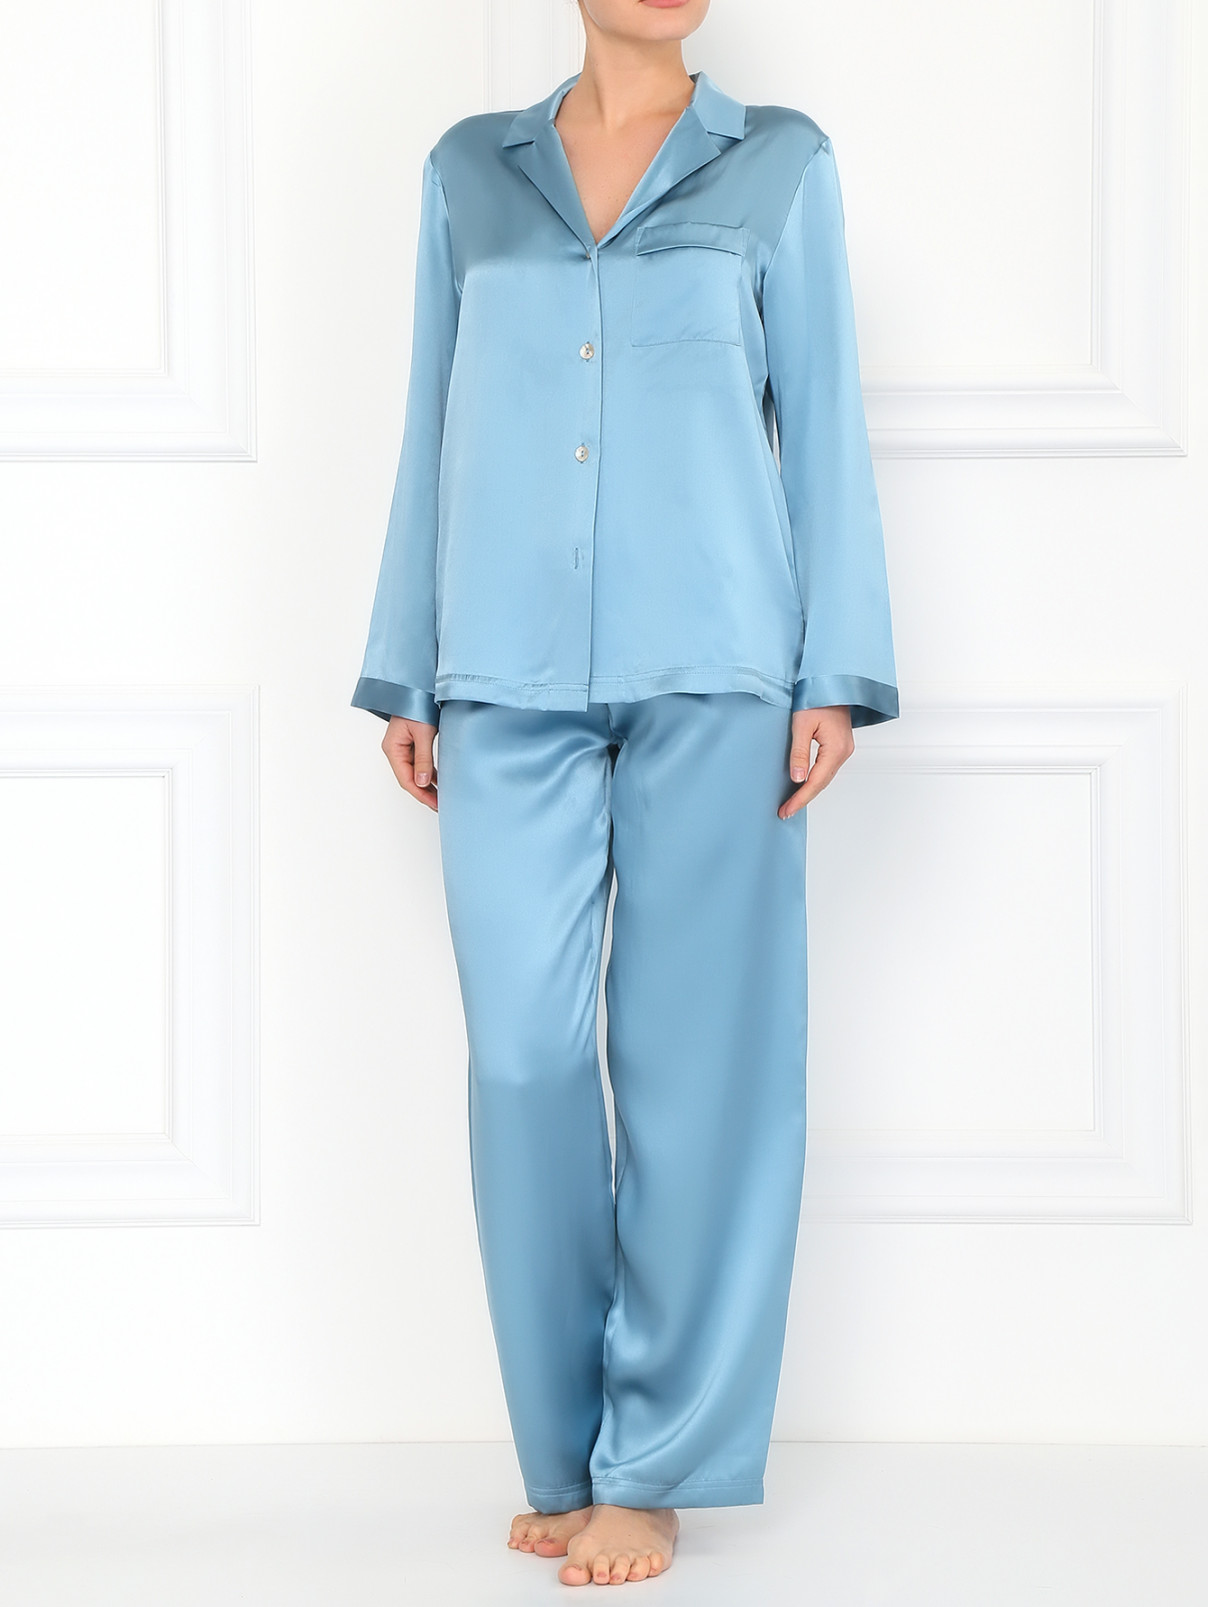 Пижама из шелка Vivis  –  Модель Общий вид  – Цвет:  Синий